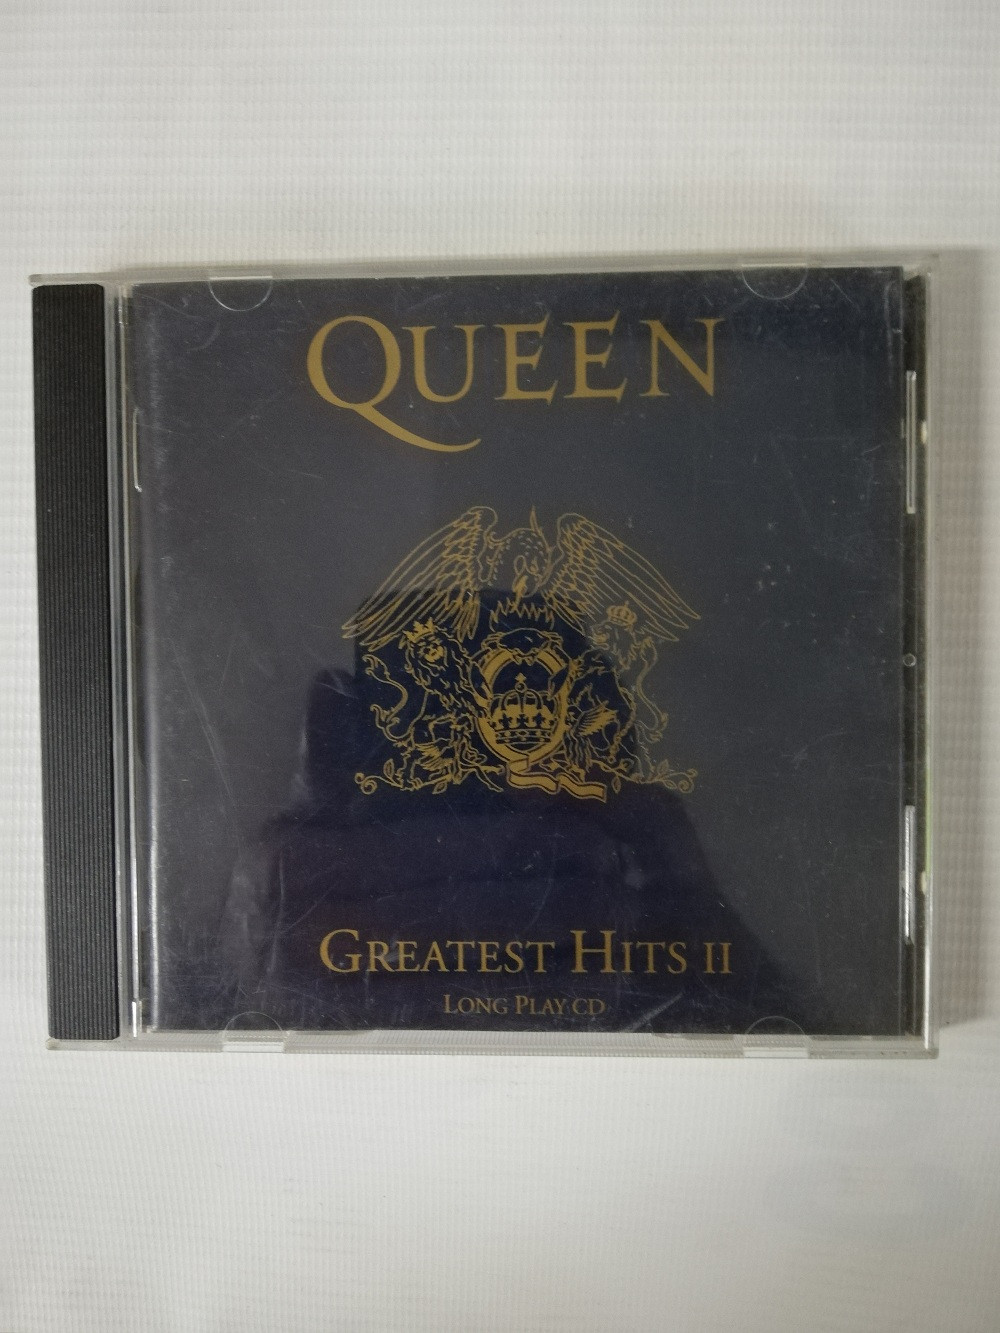 Imagen CD QUEEN - GREATEST HITS II 1